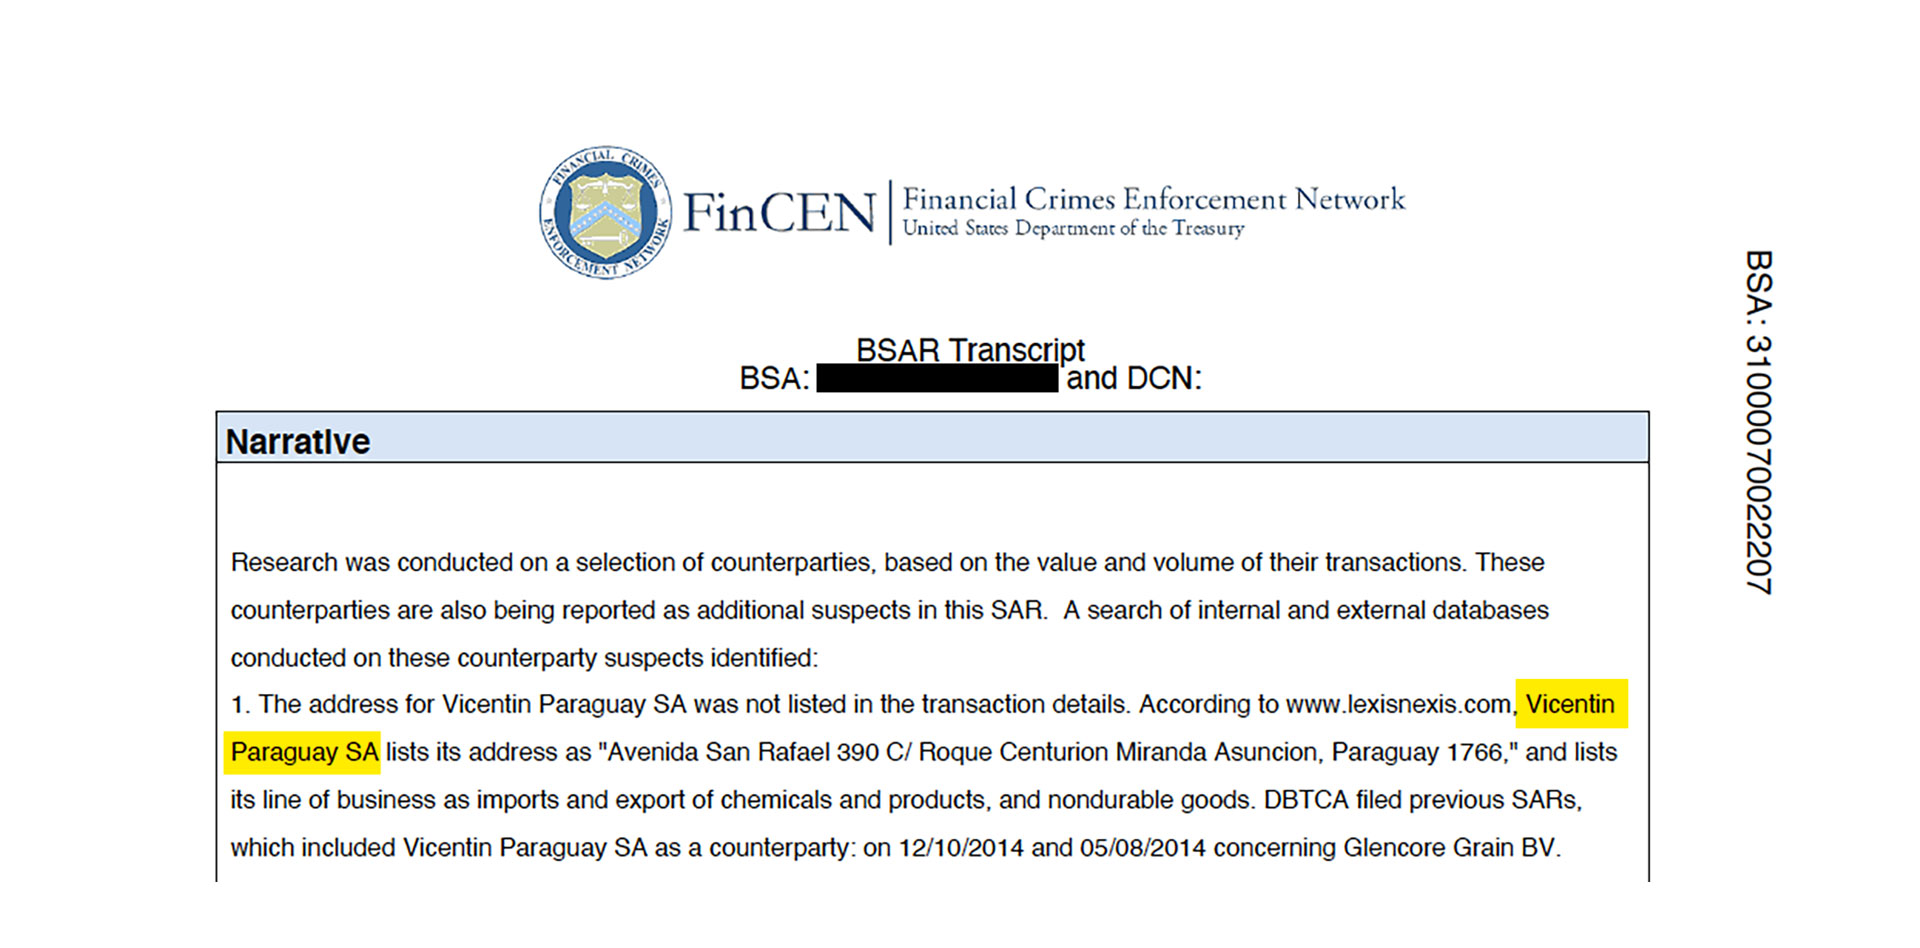 Vicentin Paraguay fue reportada por la FinCEN en 2014 y 2015 por sus transacciones con Glencore Grain que fueron consideradas como "sospechosas" preventivamente.